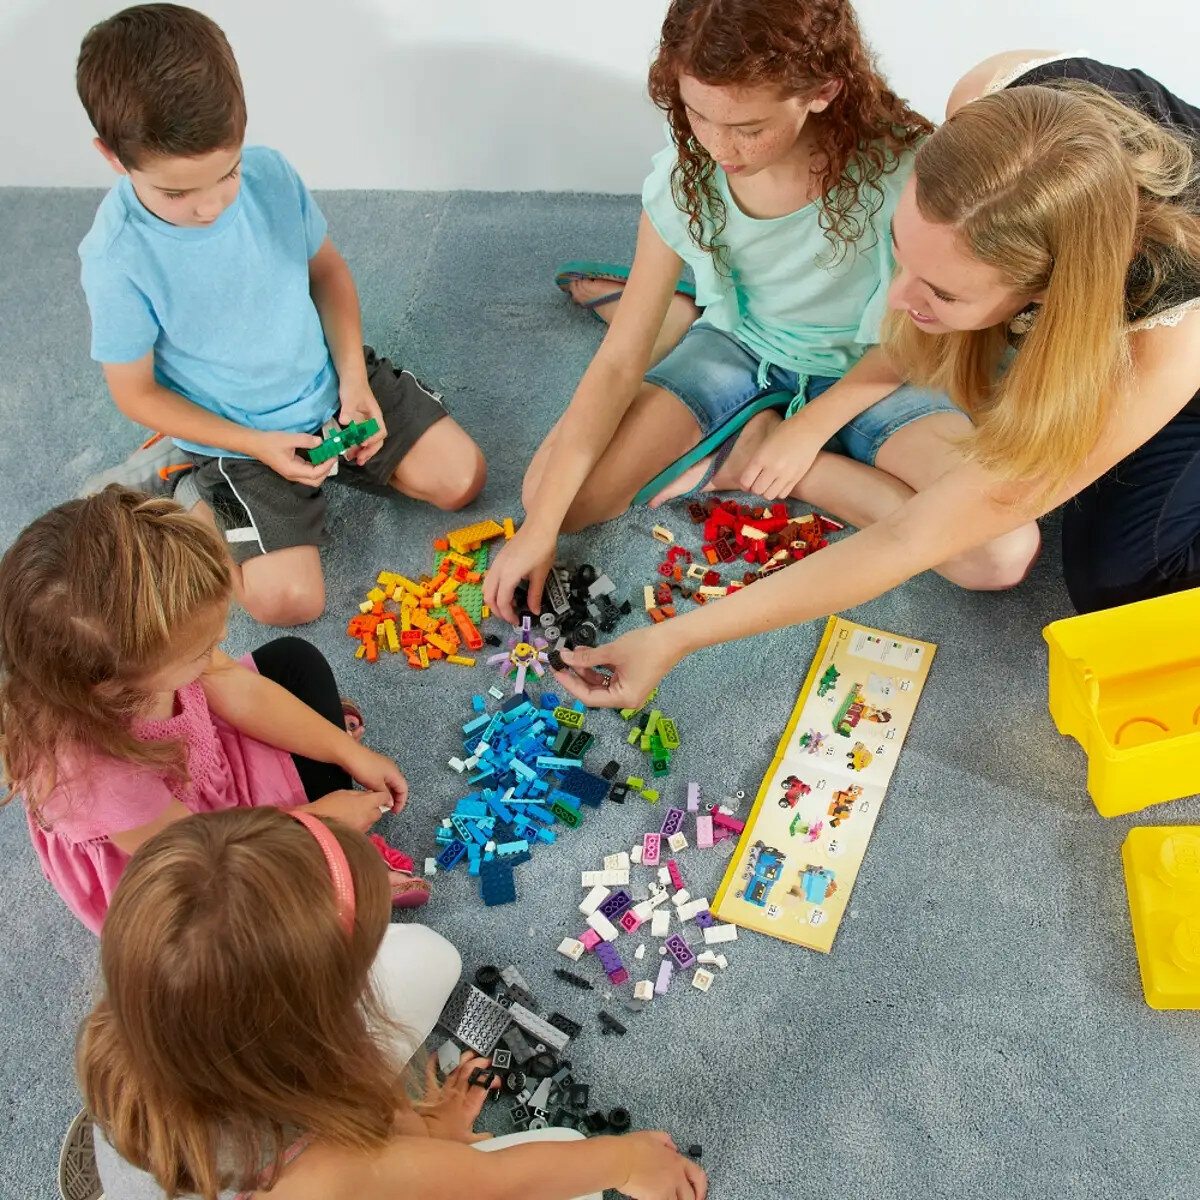 Klocki Lego Classic 10698 duże pudełko dzieci układające klocki na dywanie